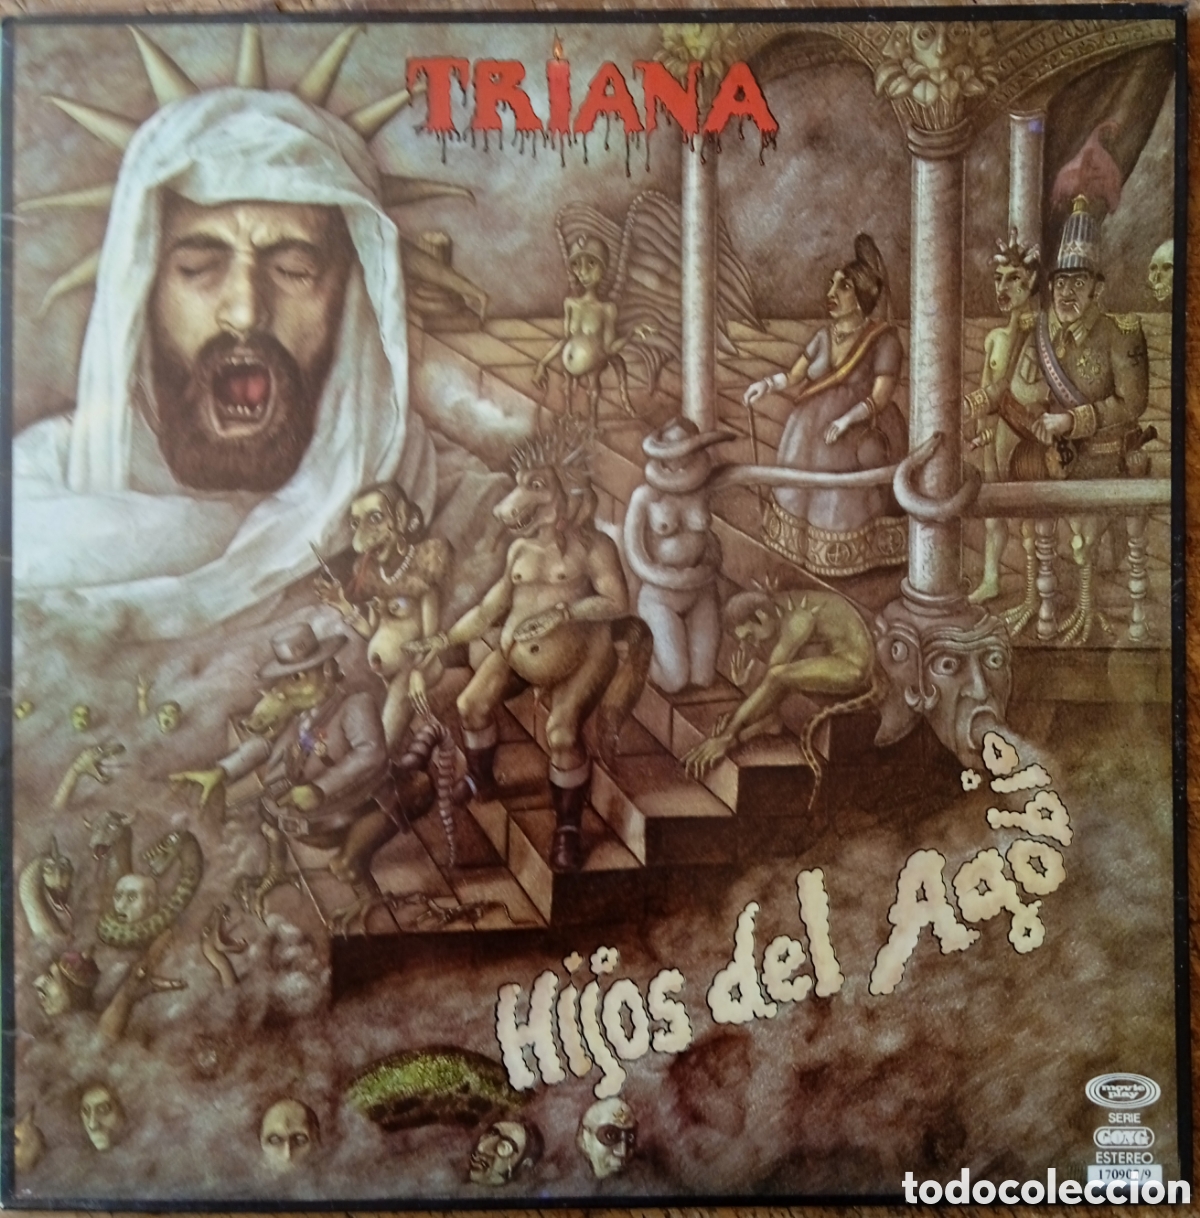 Triana Rock - TRIANA Nuevo disco Inmortal !!Ya a la venta!!. También  Edición limitada en vinilo #Triana #Inmortal #Vinilo #Cd #VentasDigitales